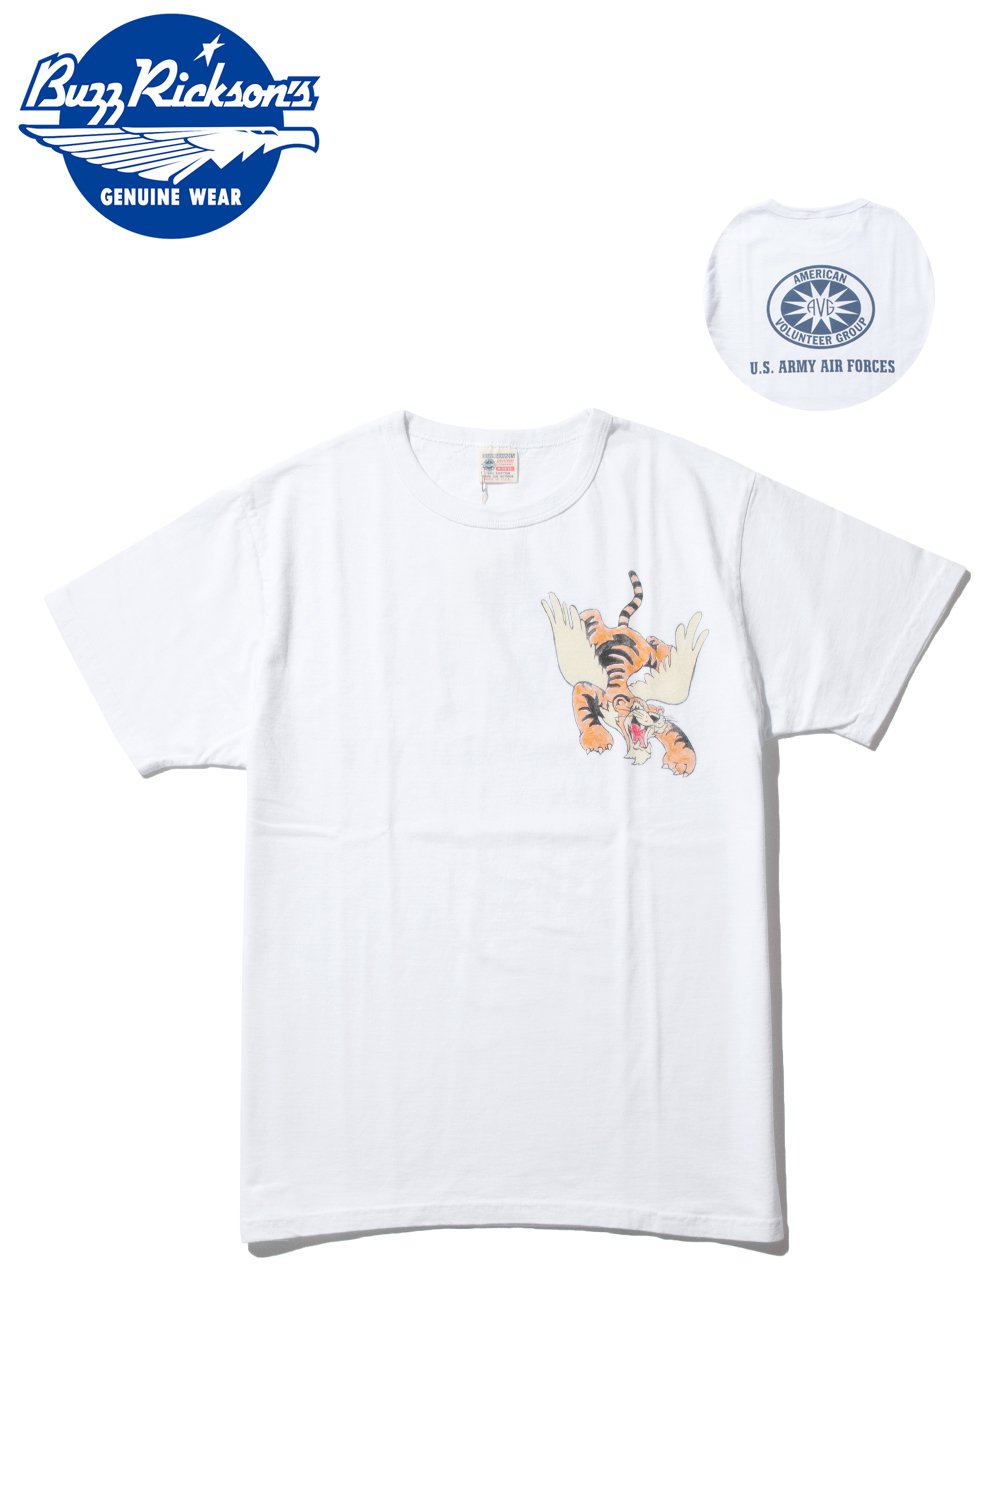 バズリクソンズ(BUZZ RICKSON'S) Tシャツ 23rd FIGHTER SQ. BR77369 通販正規取扱 | ハーレムストア